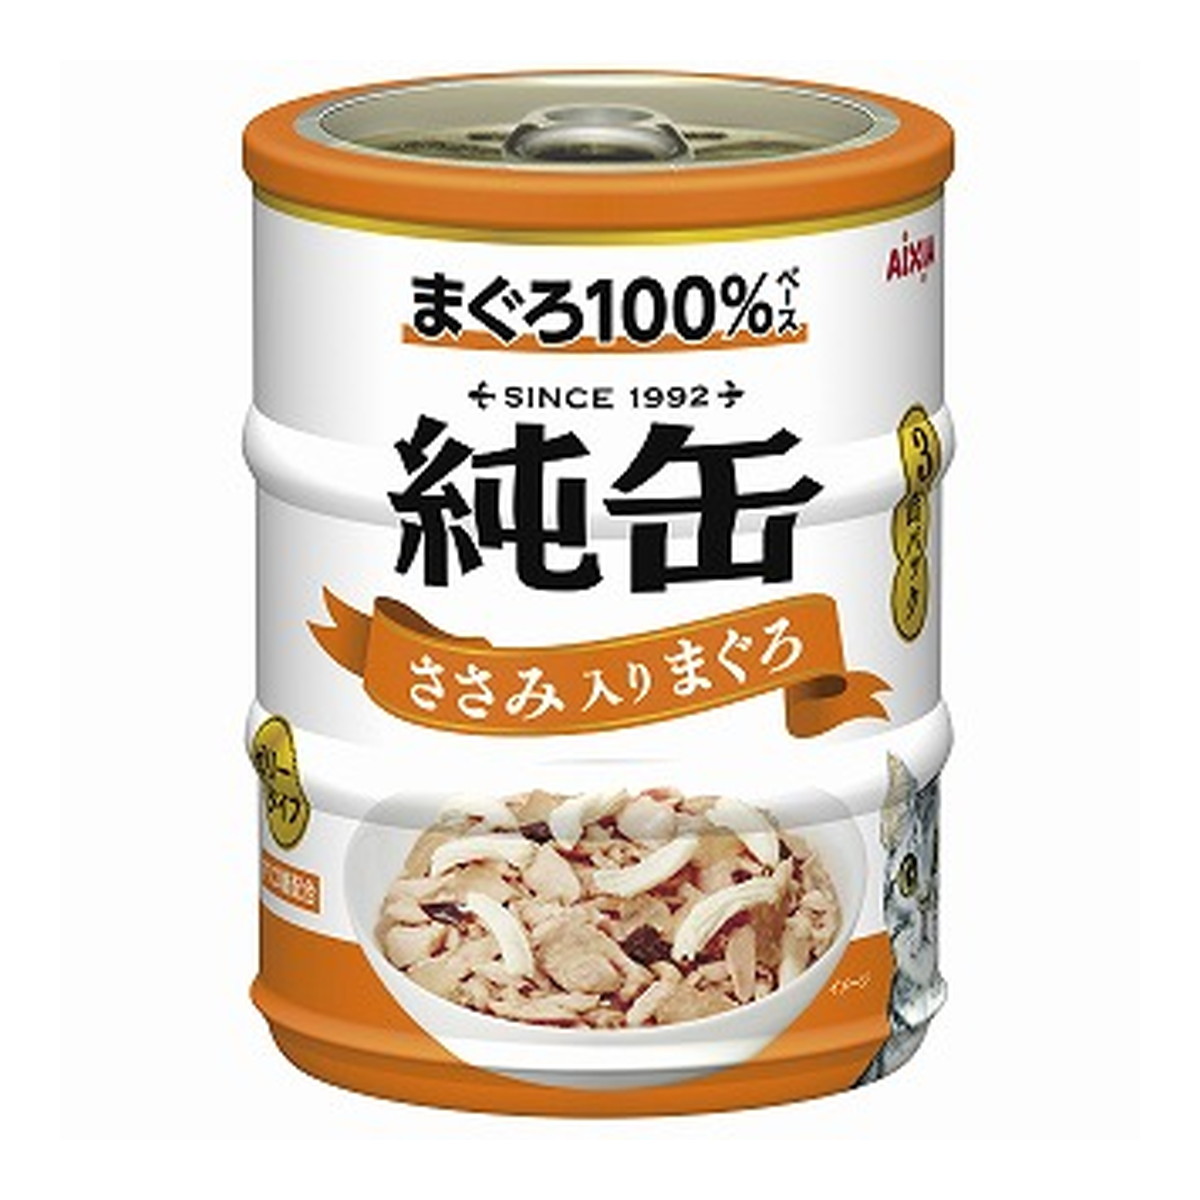 アイシア 純缶ミニ3P ささみ入りまぐろ 195g（65g×3缶）×8セット 猫缶、ウエットフードの商品画像